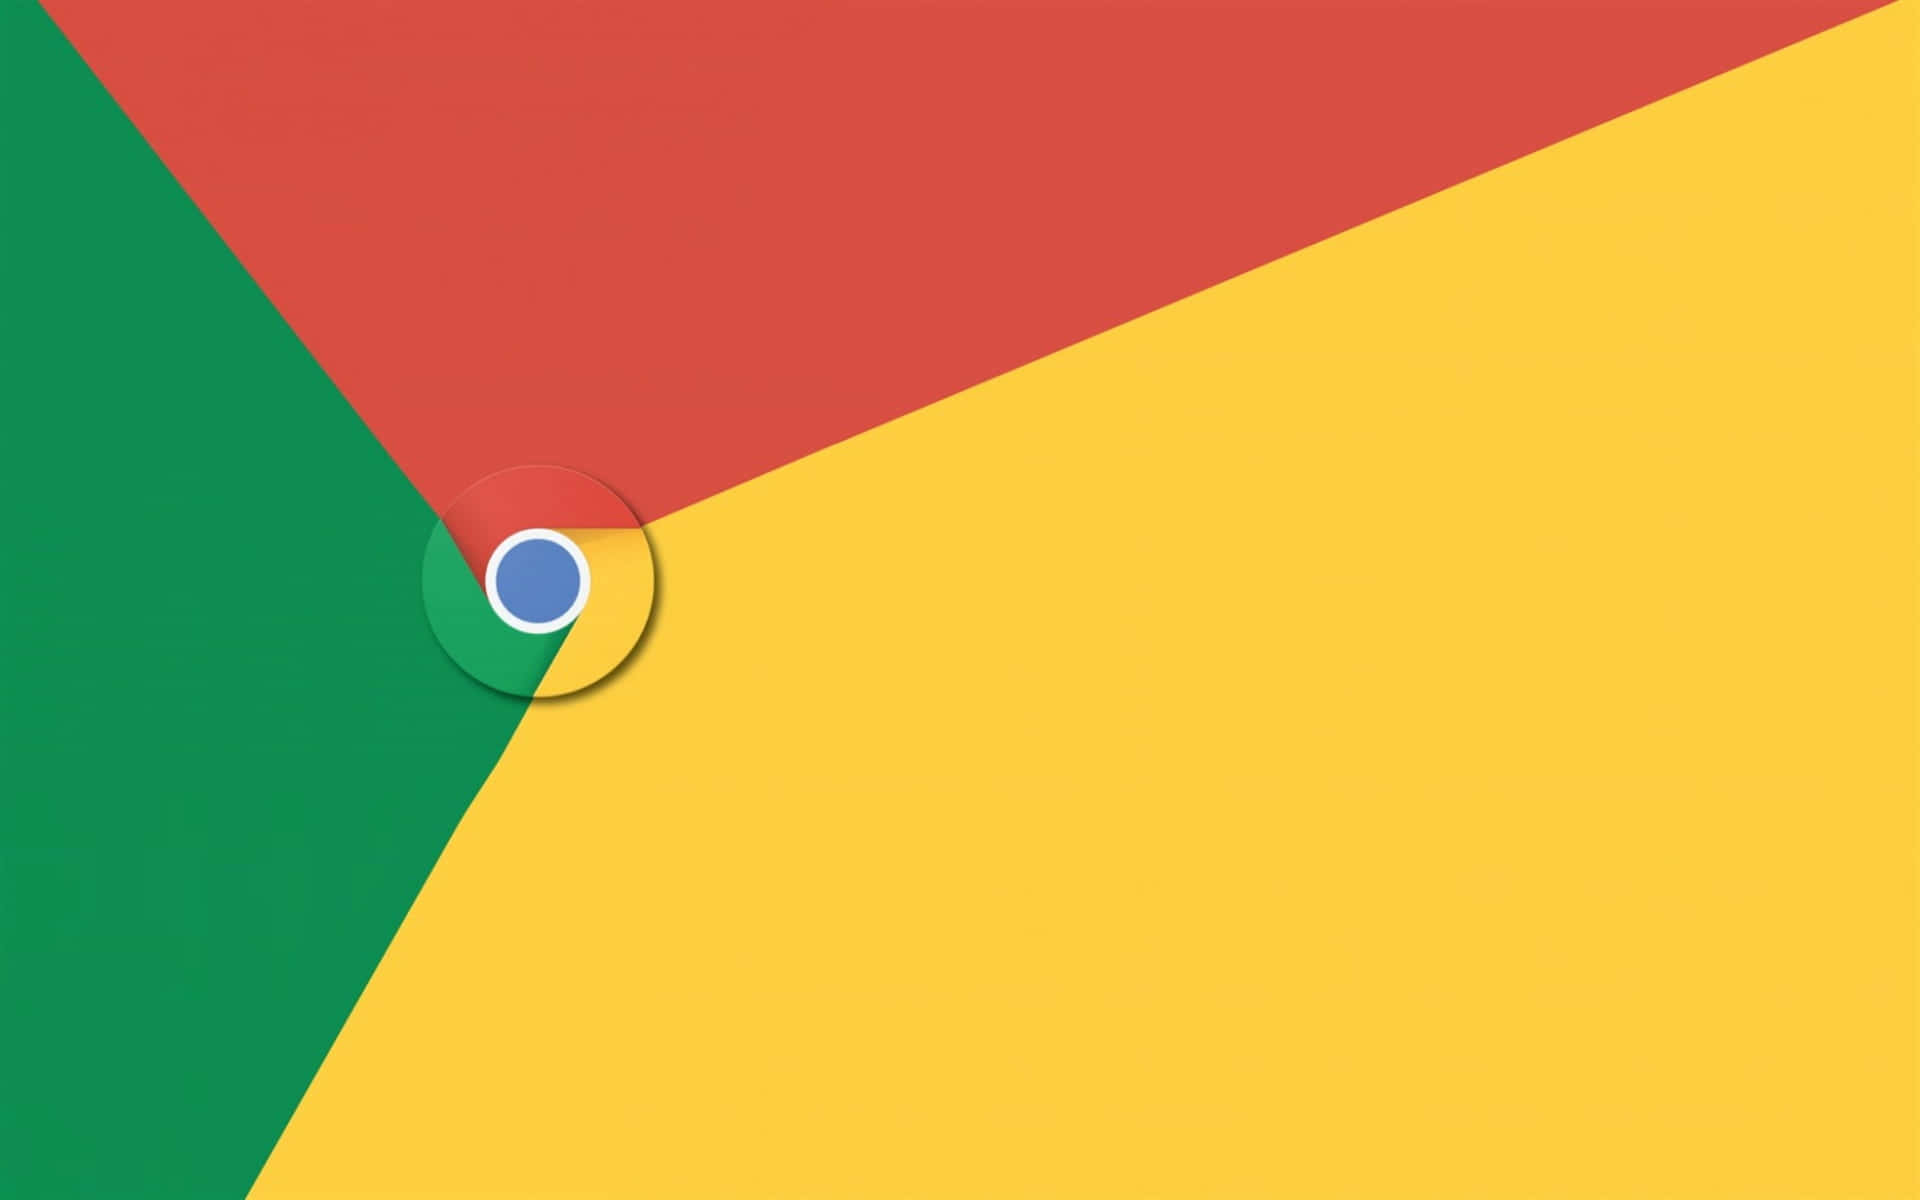 Logotipode Google Chrome Sobre Fondo Azul